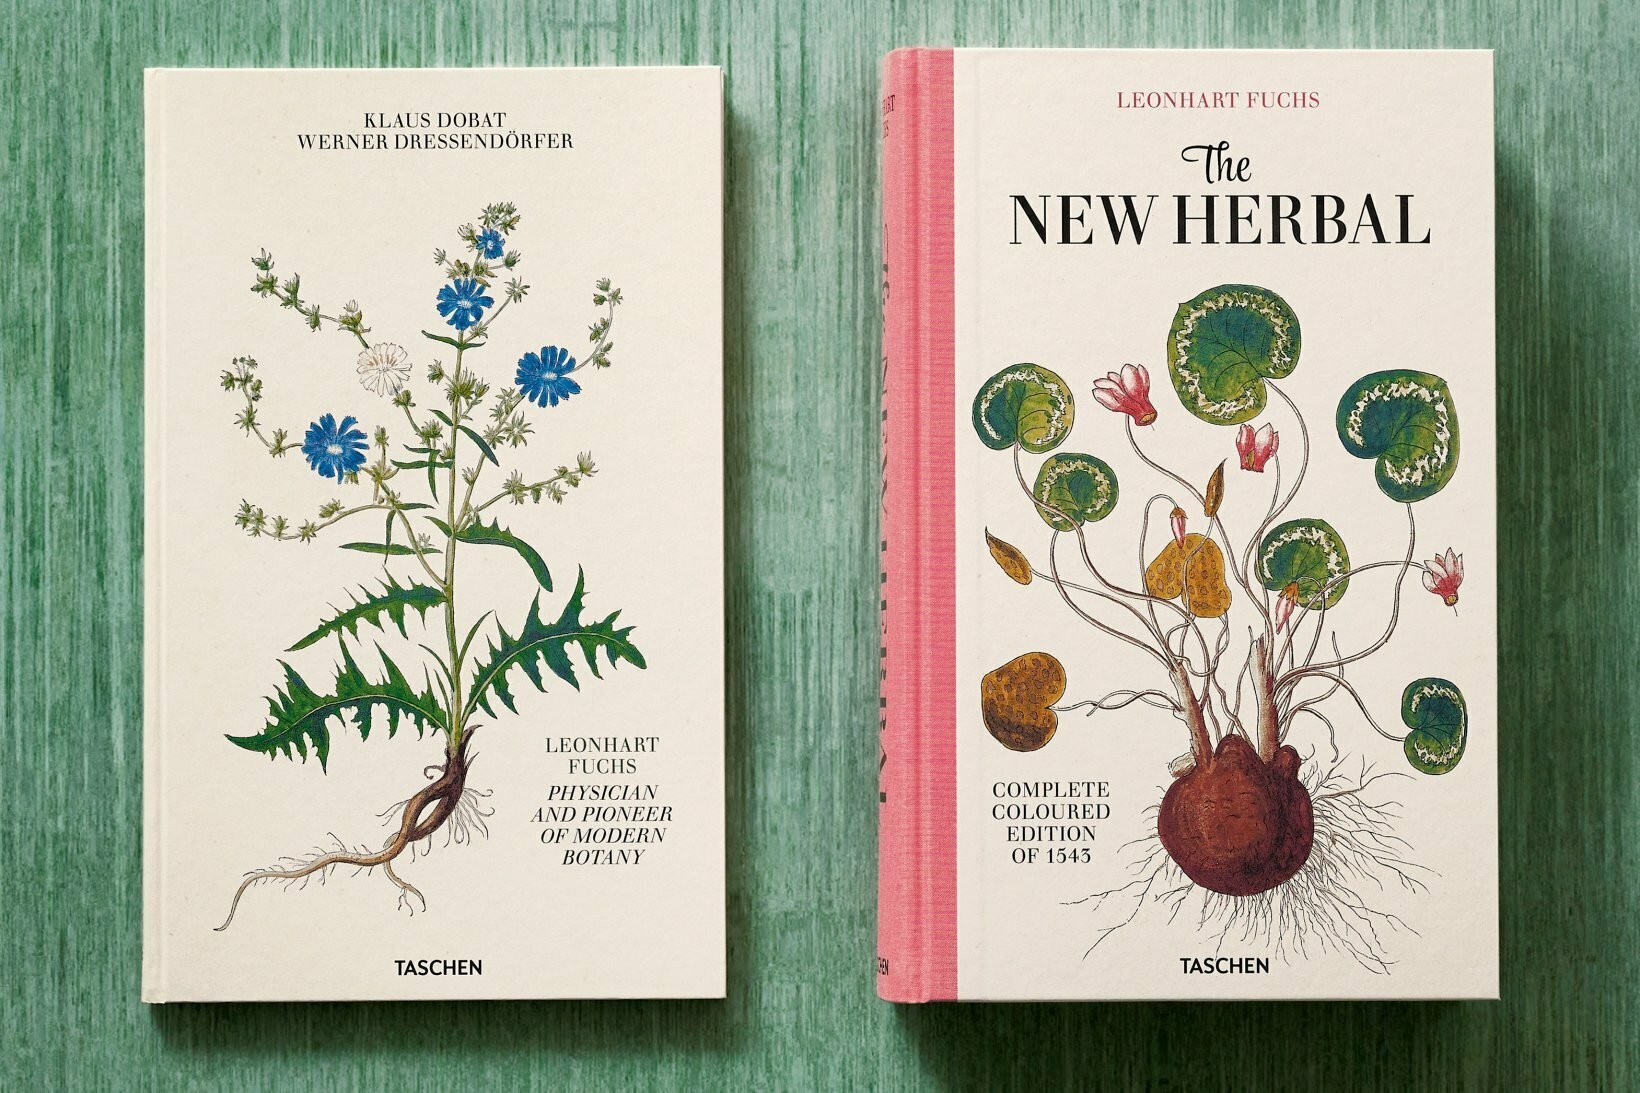 Taschen ha ripubblicato il “New Kreüterbuch” (Nuovo libro sulle erbe),  capolavoro di botanica del '500 - Frizzifrizzi